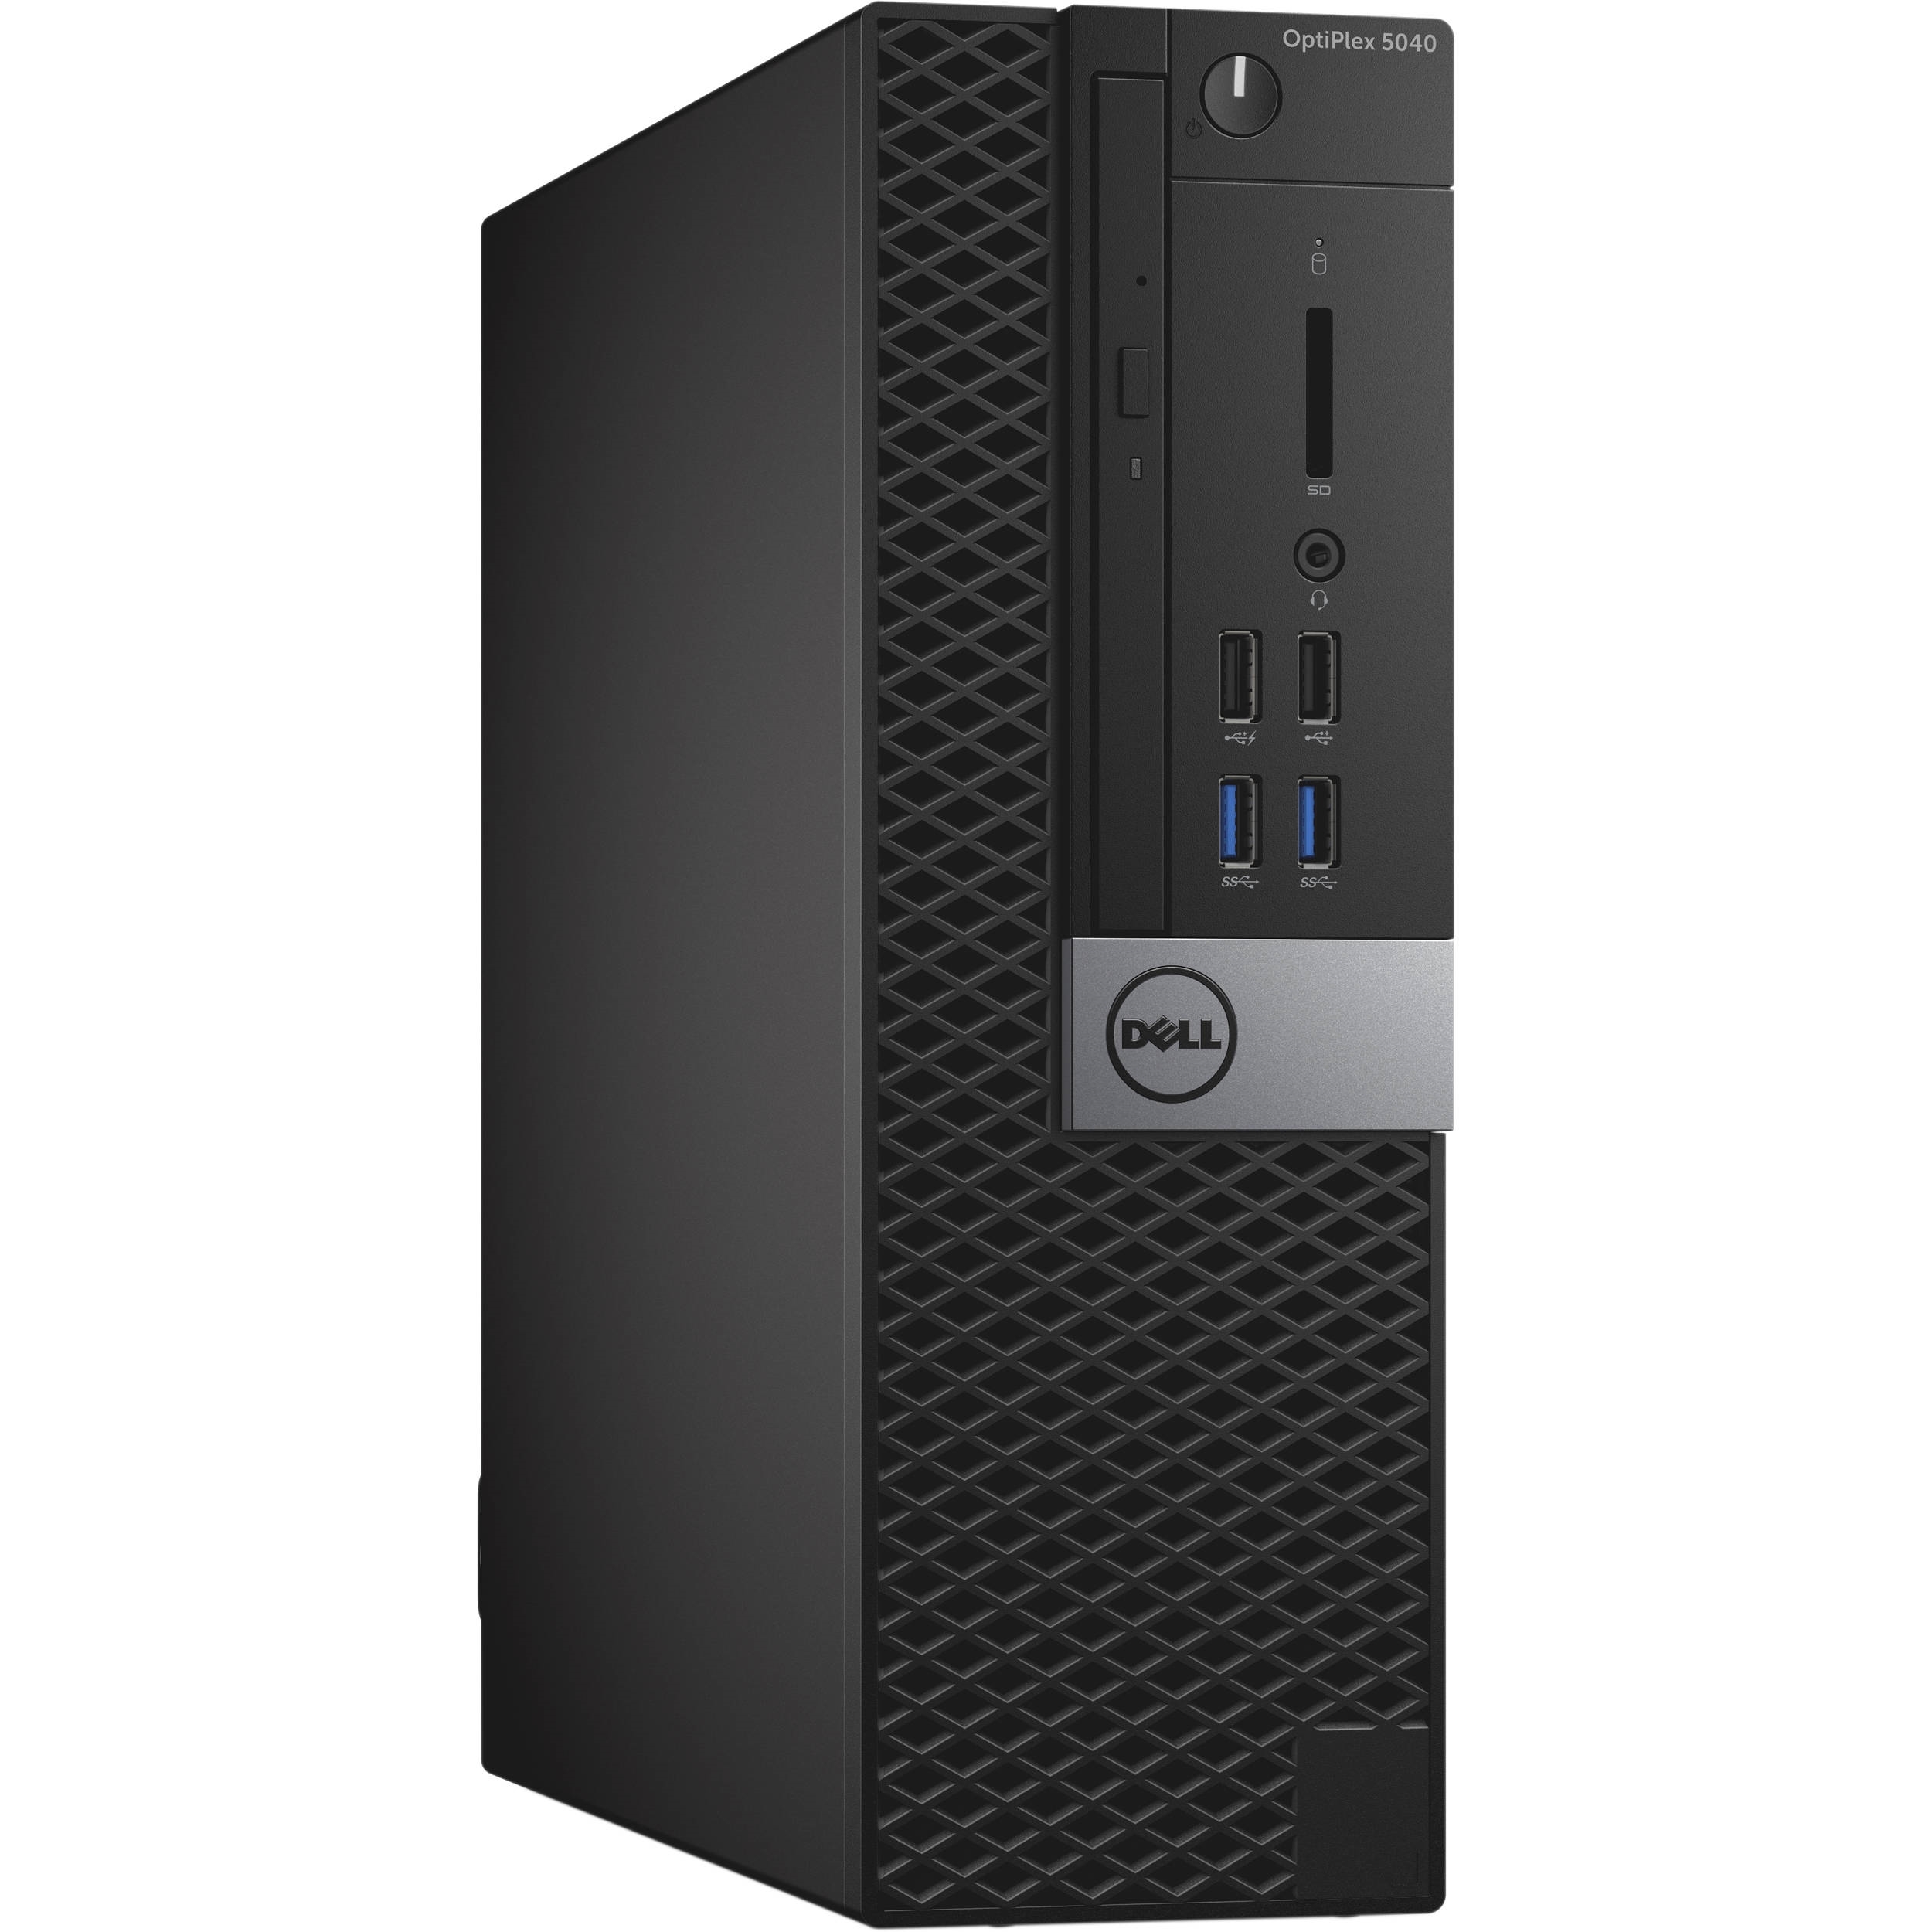 Dell 1471323520  Optiplex 5040 Intel Core i7-6700 X4 3.4GHz 16GB 500GB Win10,Black(Certified )